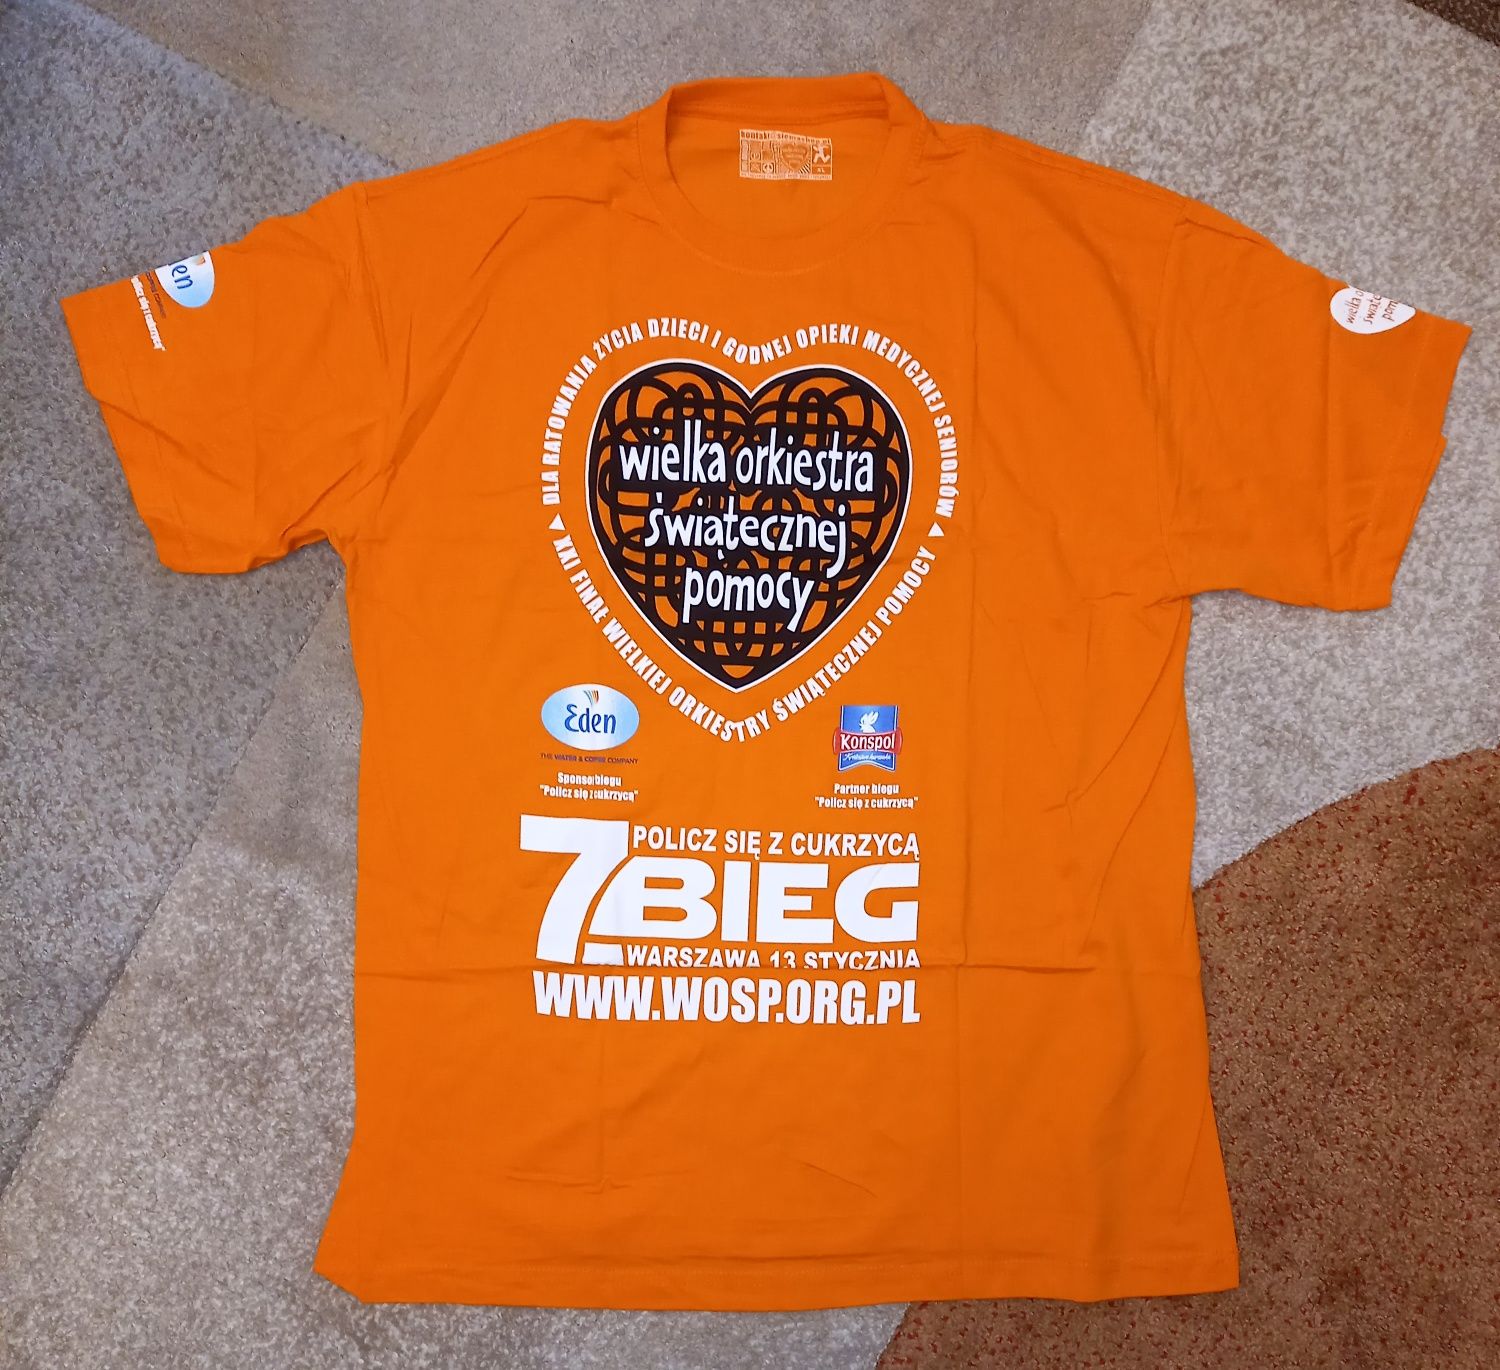 T-shirt 21 finał WOŚP 2013, 7 bieg Policz się z cukrzycą XL